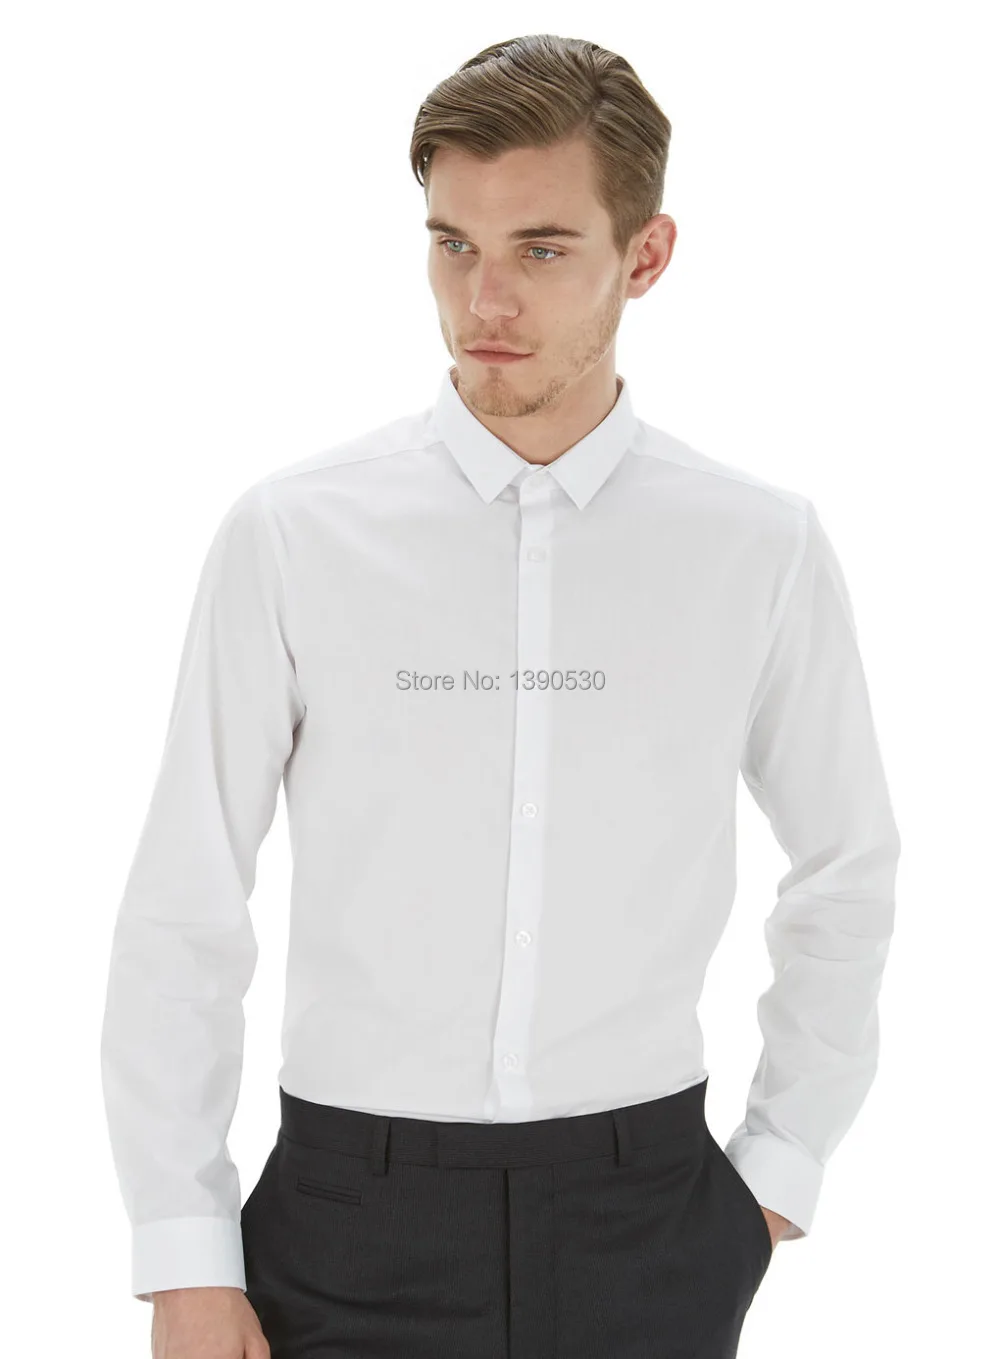 Дизайн хлопок чистый белый классический воротник рубашки для мужчин